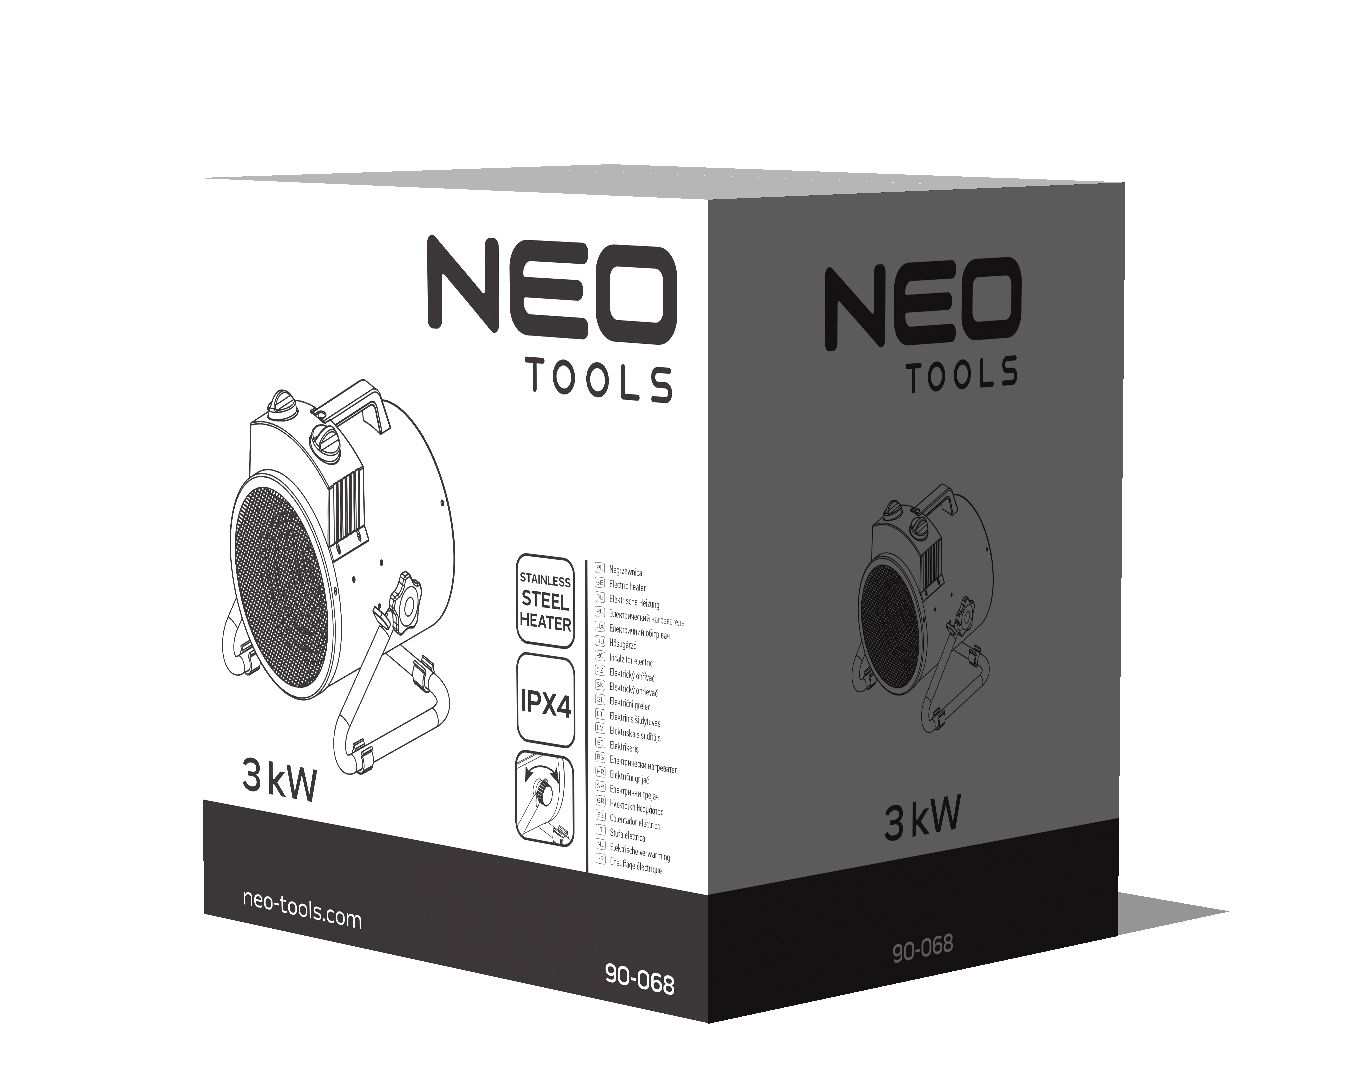 Тепловая пушка Neo Tools 90-068 характеристики - фотография 7